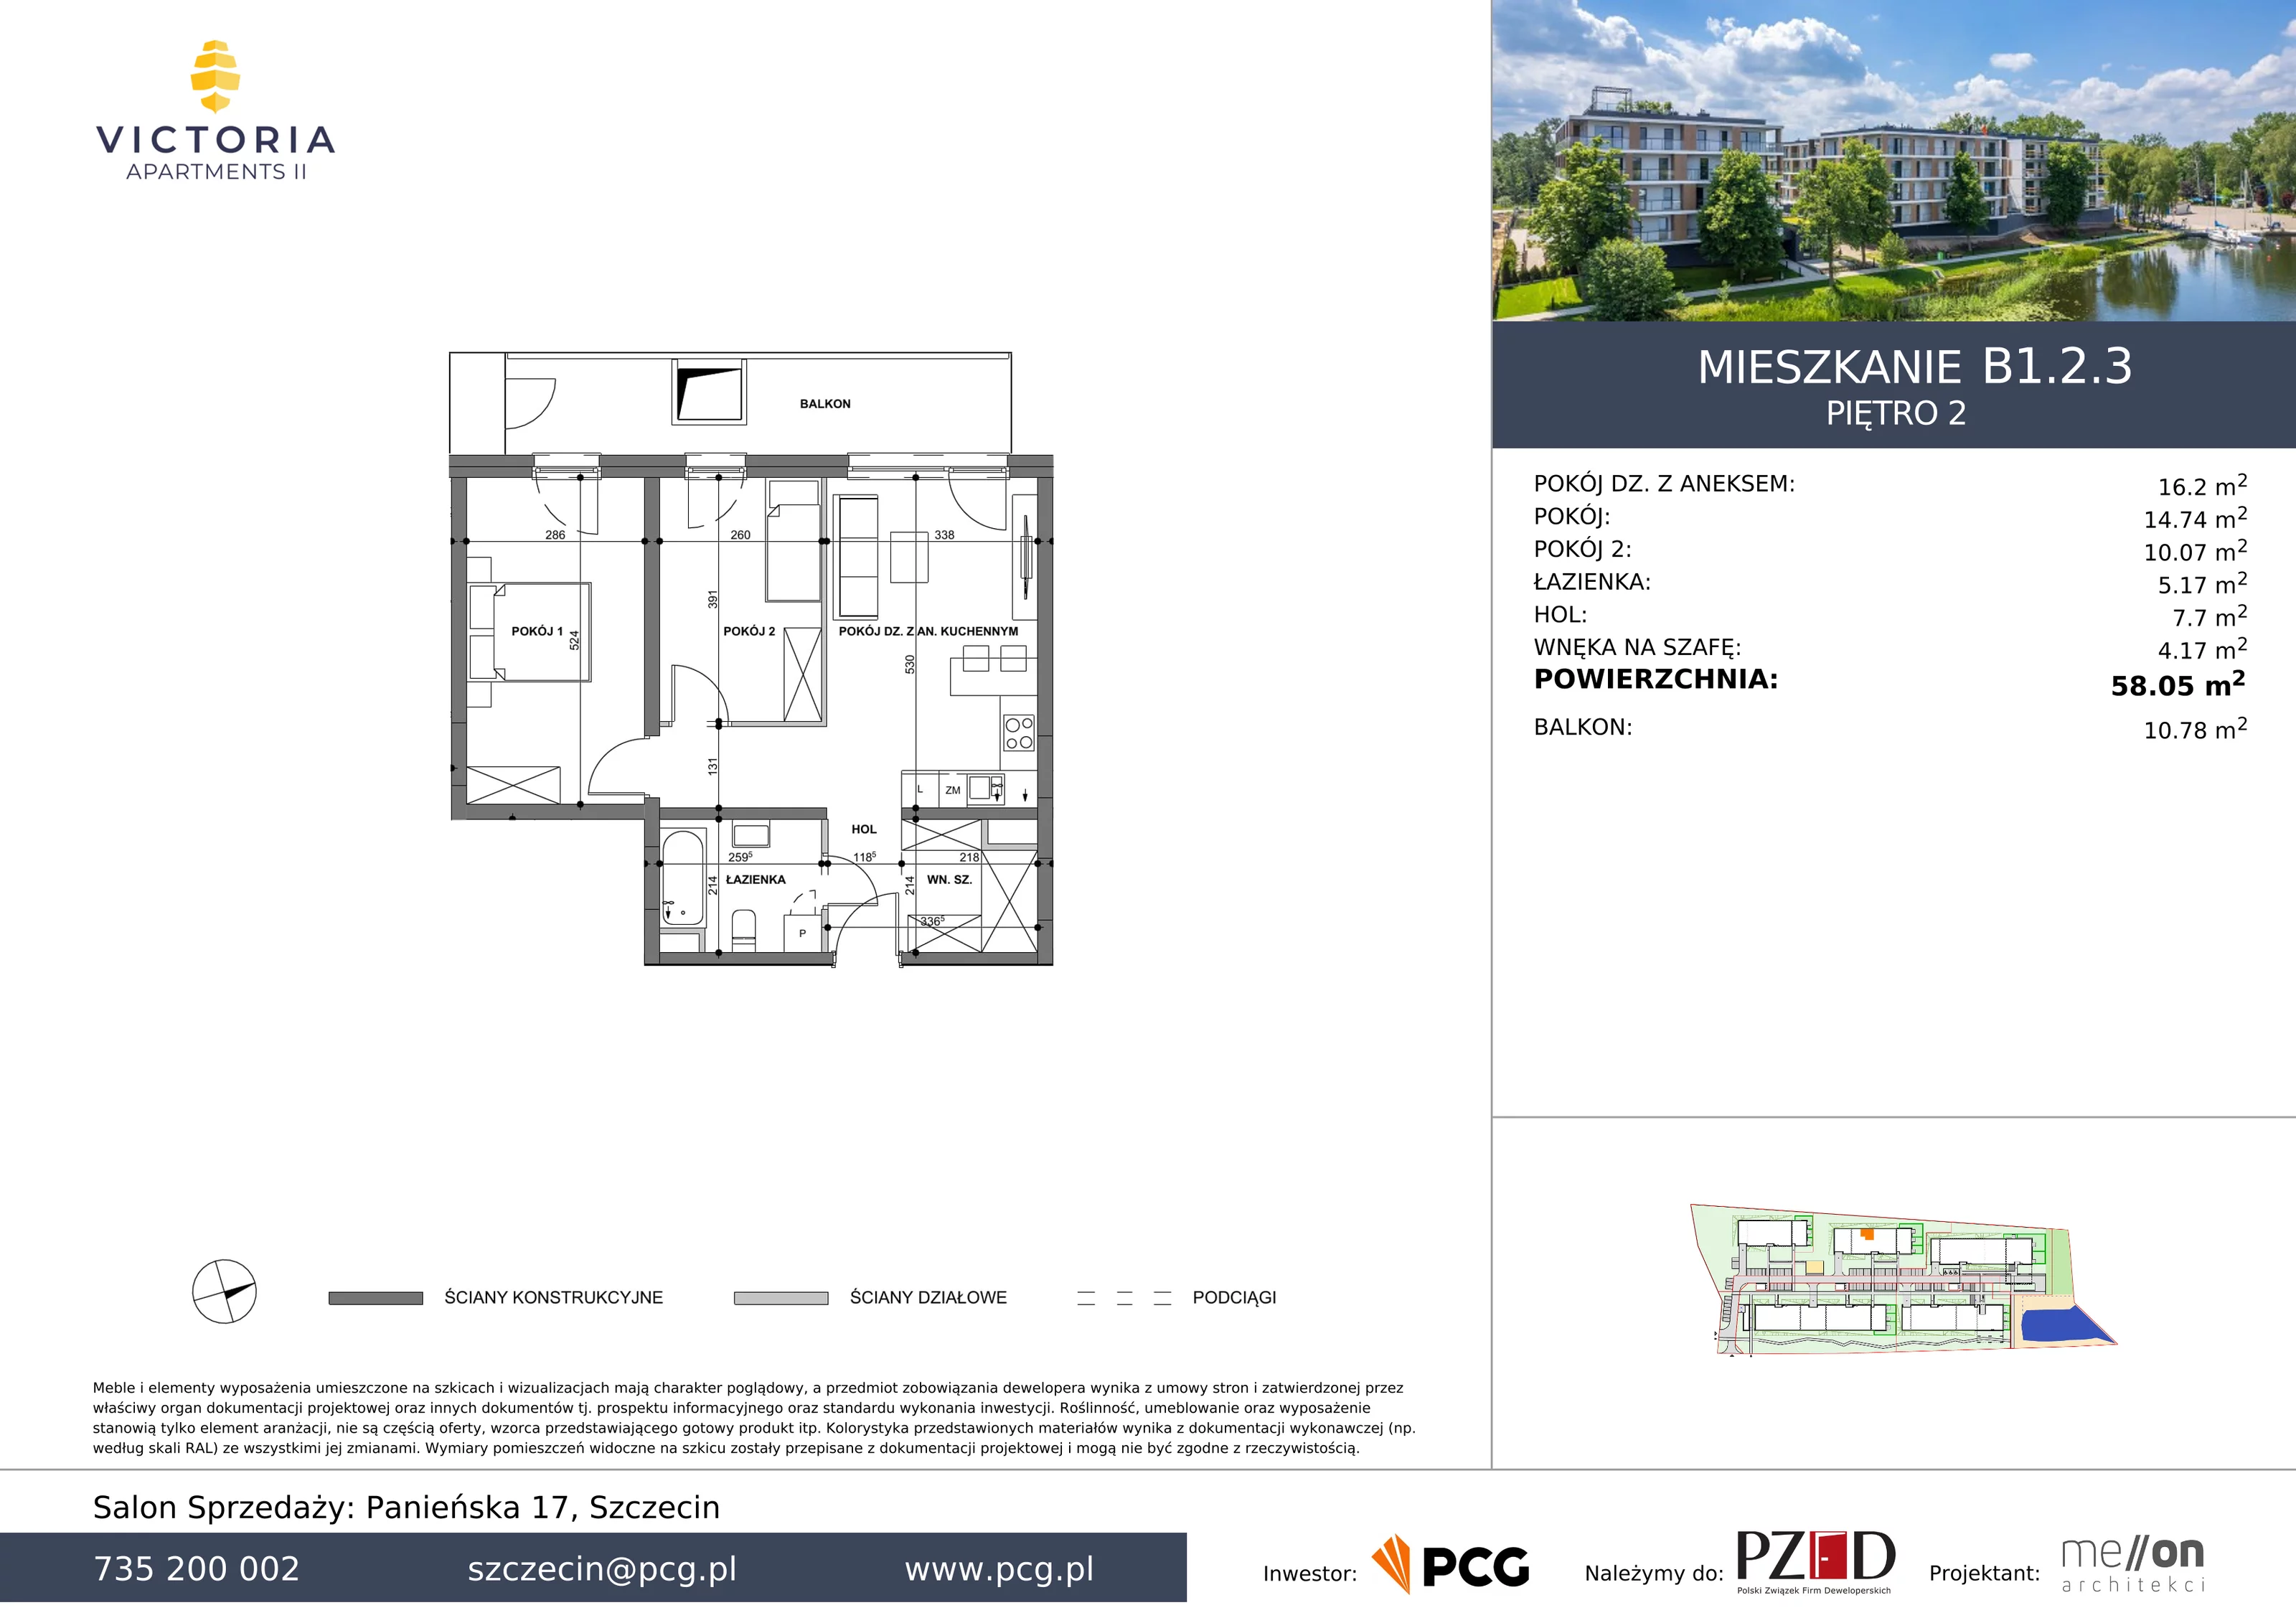 Apartament 58,05 m², piętro 2, oferta nr B1.2.3, Victoria Apartments II, Szczecin, Prawobrzeże, Dąbie, ul. Przestrzenna